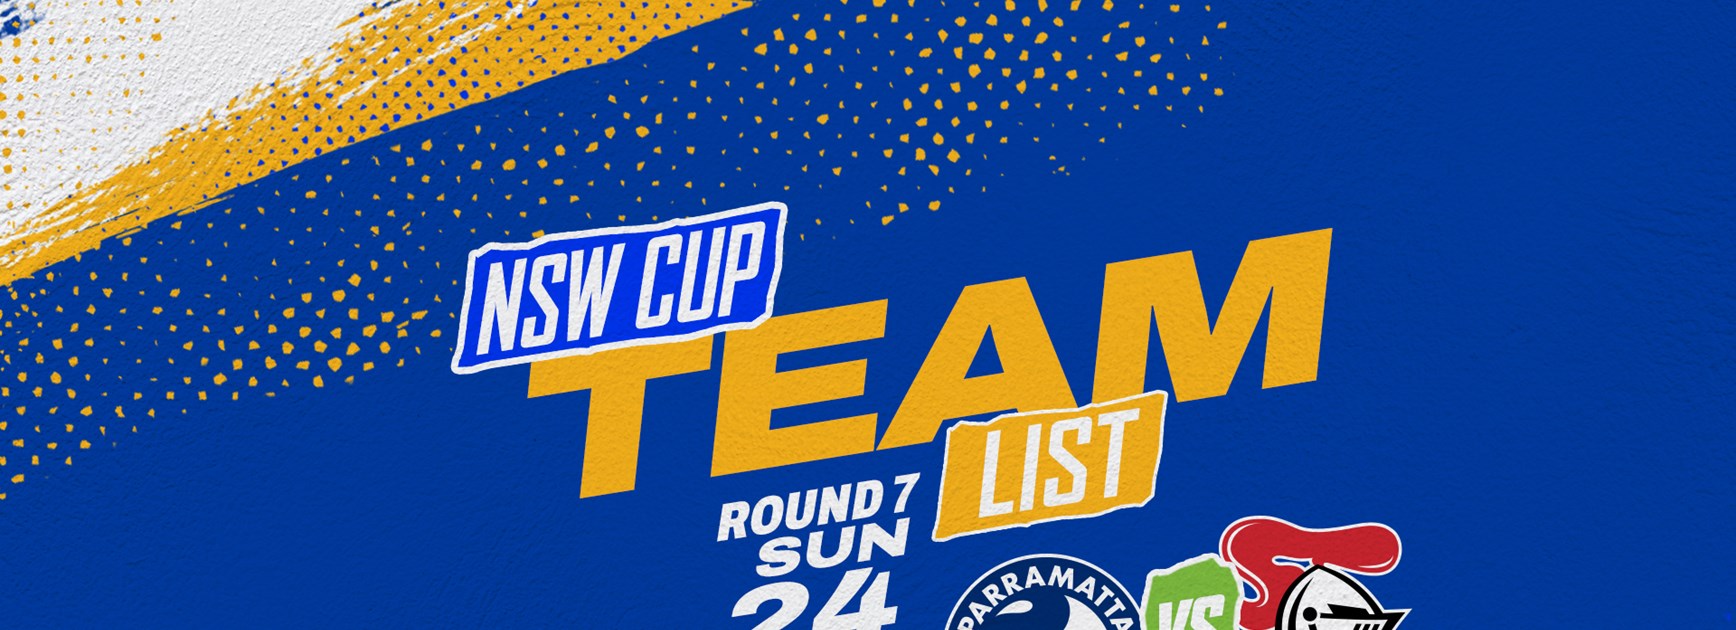 NSW Cup Team List - Round Seven